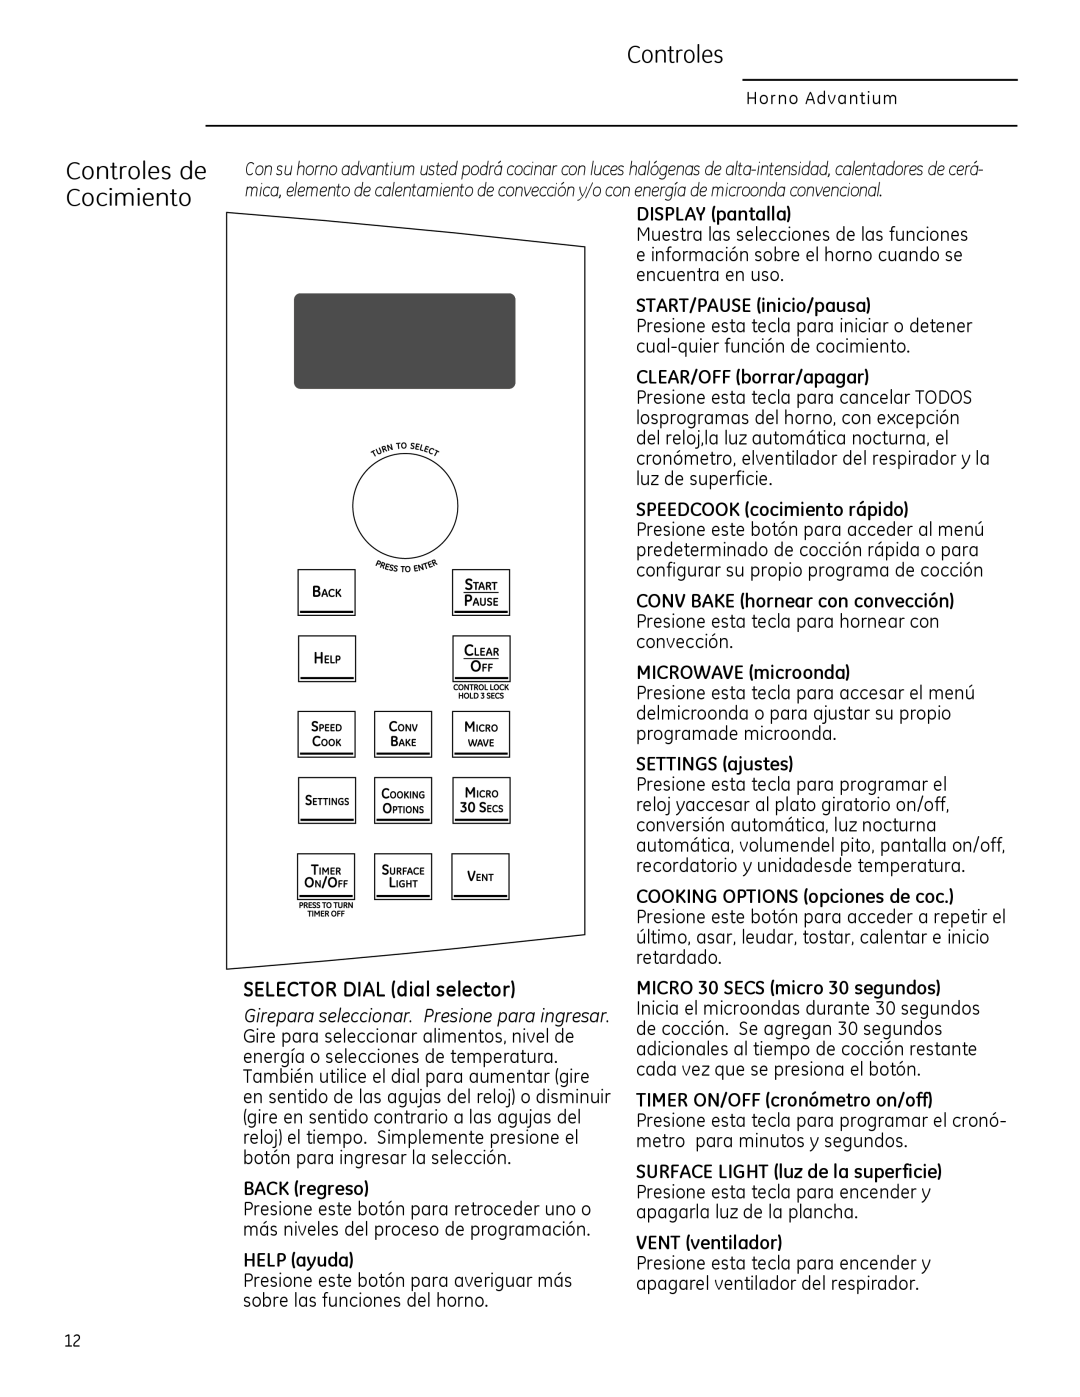 GE PSA1201, PSA1200, CSA1201 owner manual Controles de Cocimiento, SELECTOR DIAL dial selector 